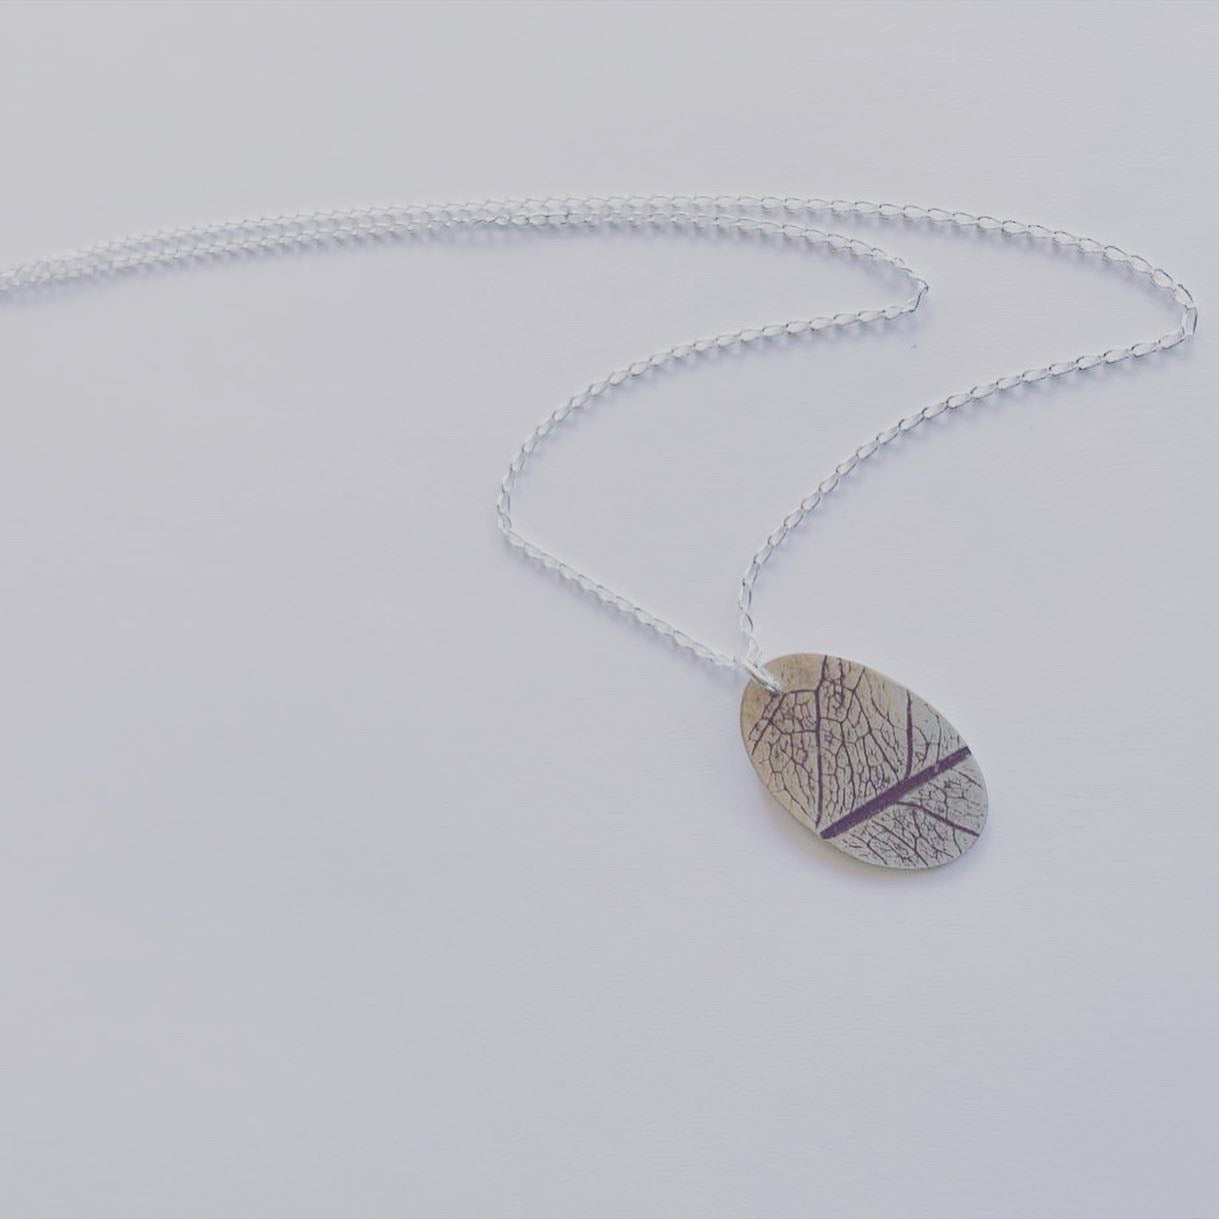 connection pendant, leaf imprint pendant